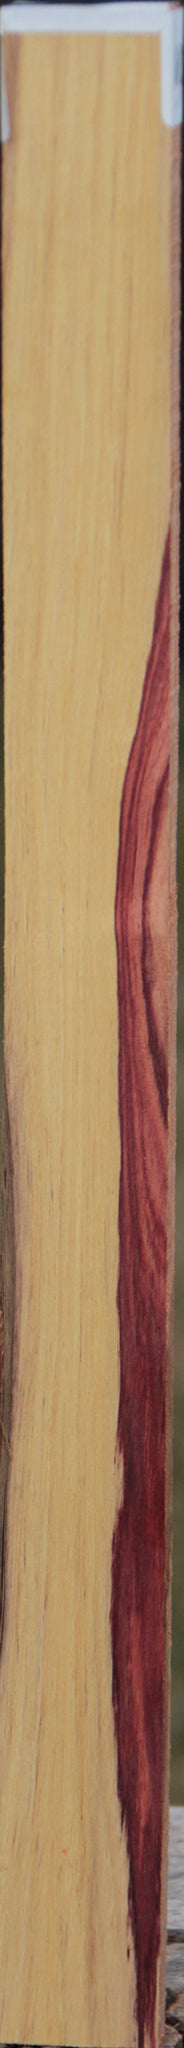 Exhibition Tulipwood Lumber